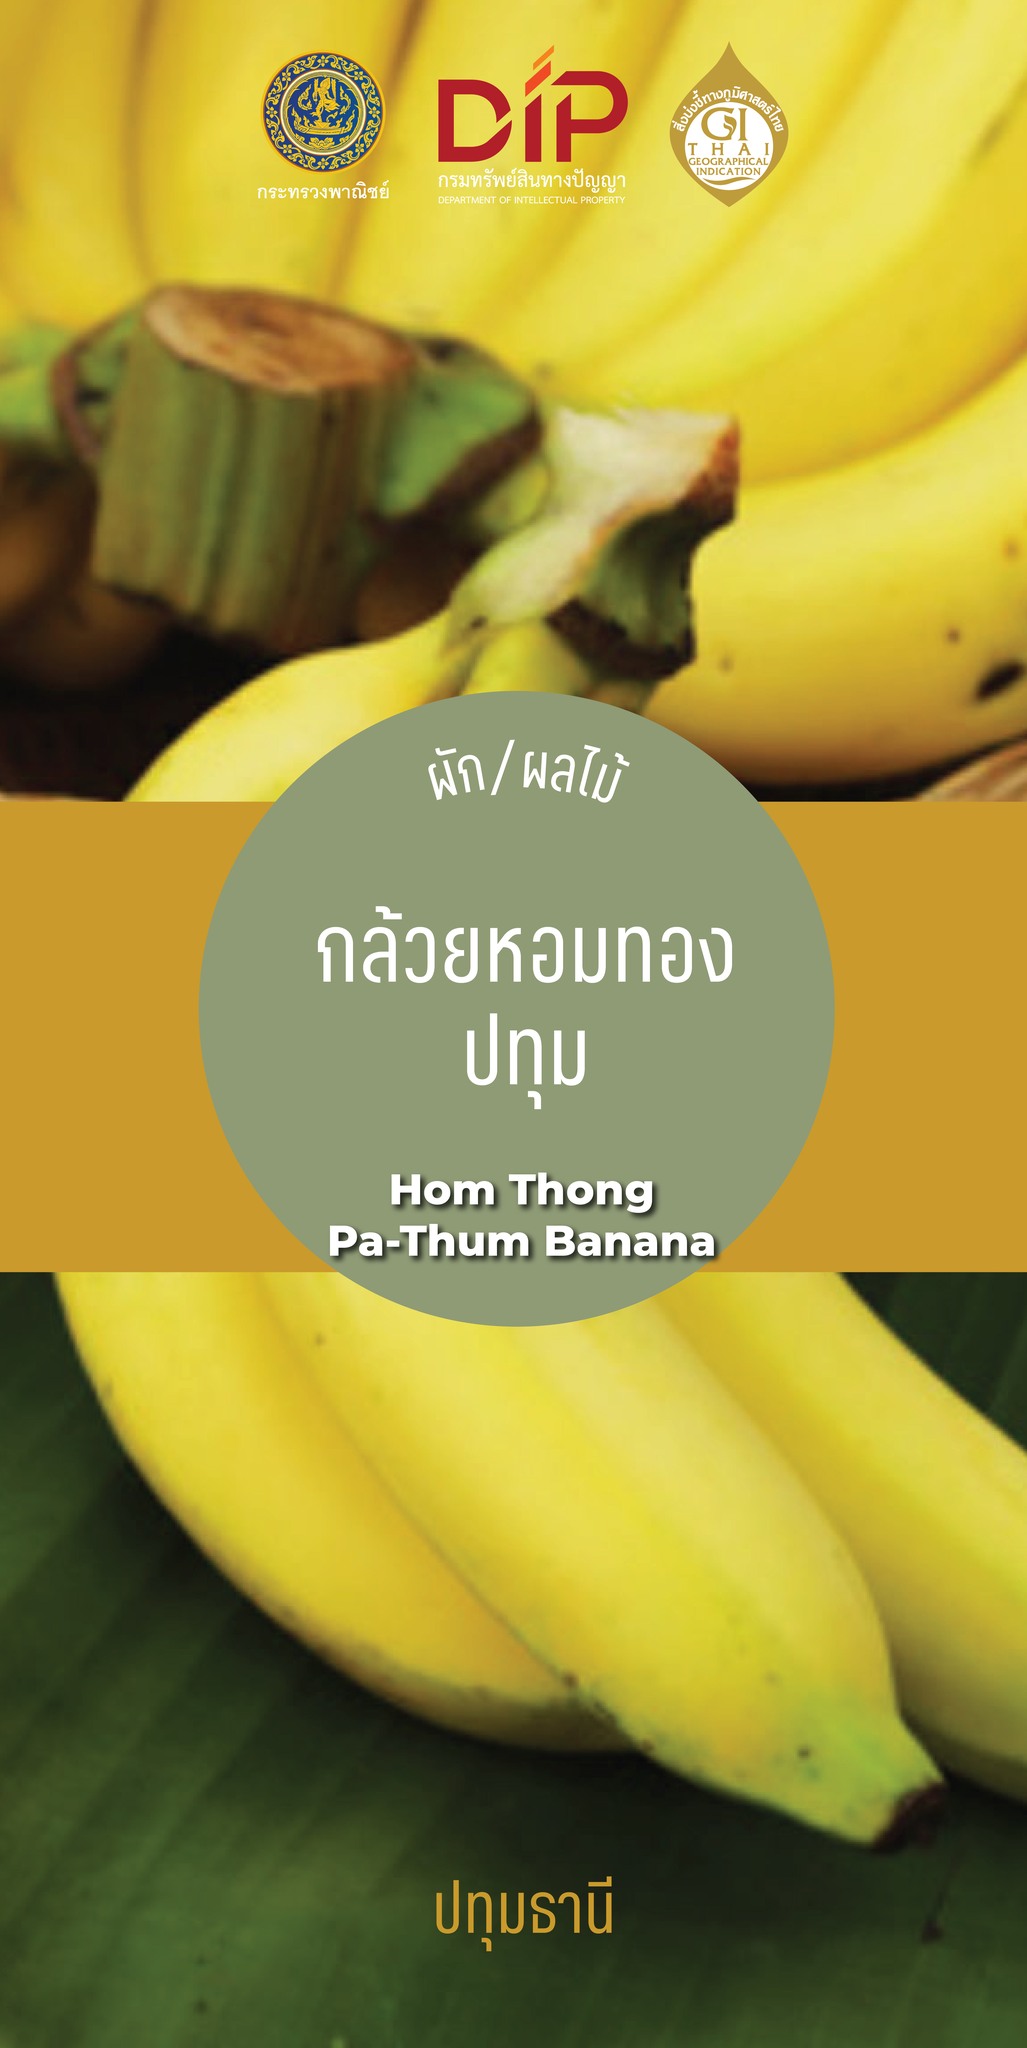 ขอชวนชาวปทุมธานีร่วมสนับสนุน “กล้วยหอมทองปทุม” ( Hom Thong Pa-Thum Banana) 